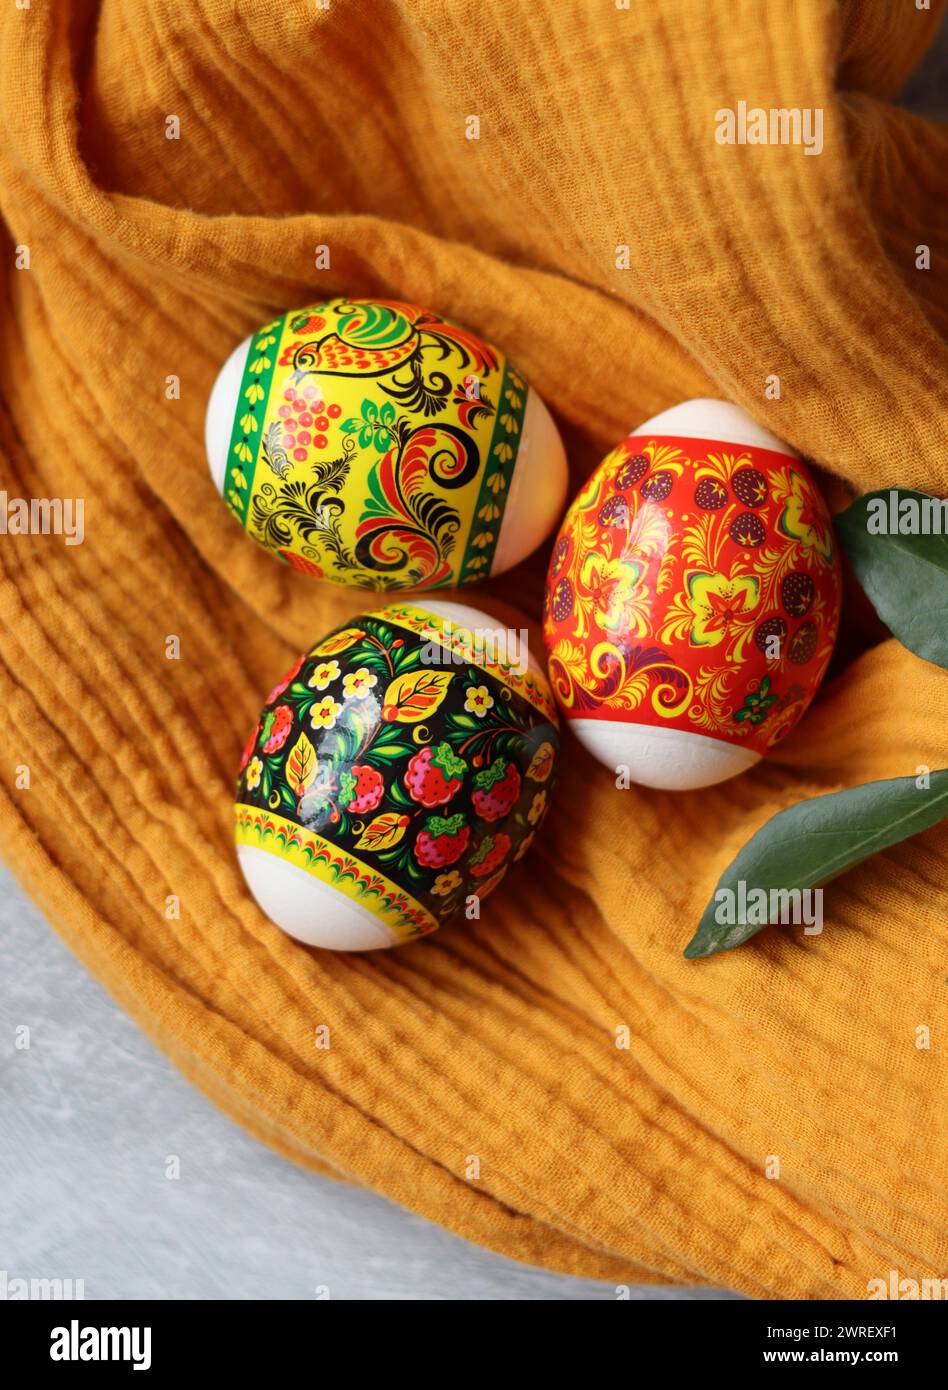 Ostereier auf einem Tisch. Stillleben mit weißen Blumen und Eiern. Foto von oben mit bunten Eiern auf einem Tisch. Osterferien Konzept. Stockfoto